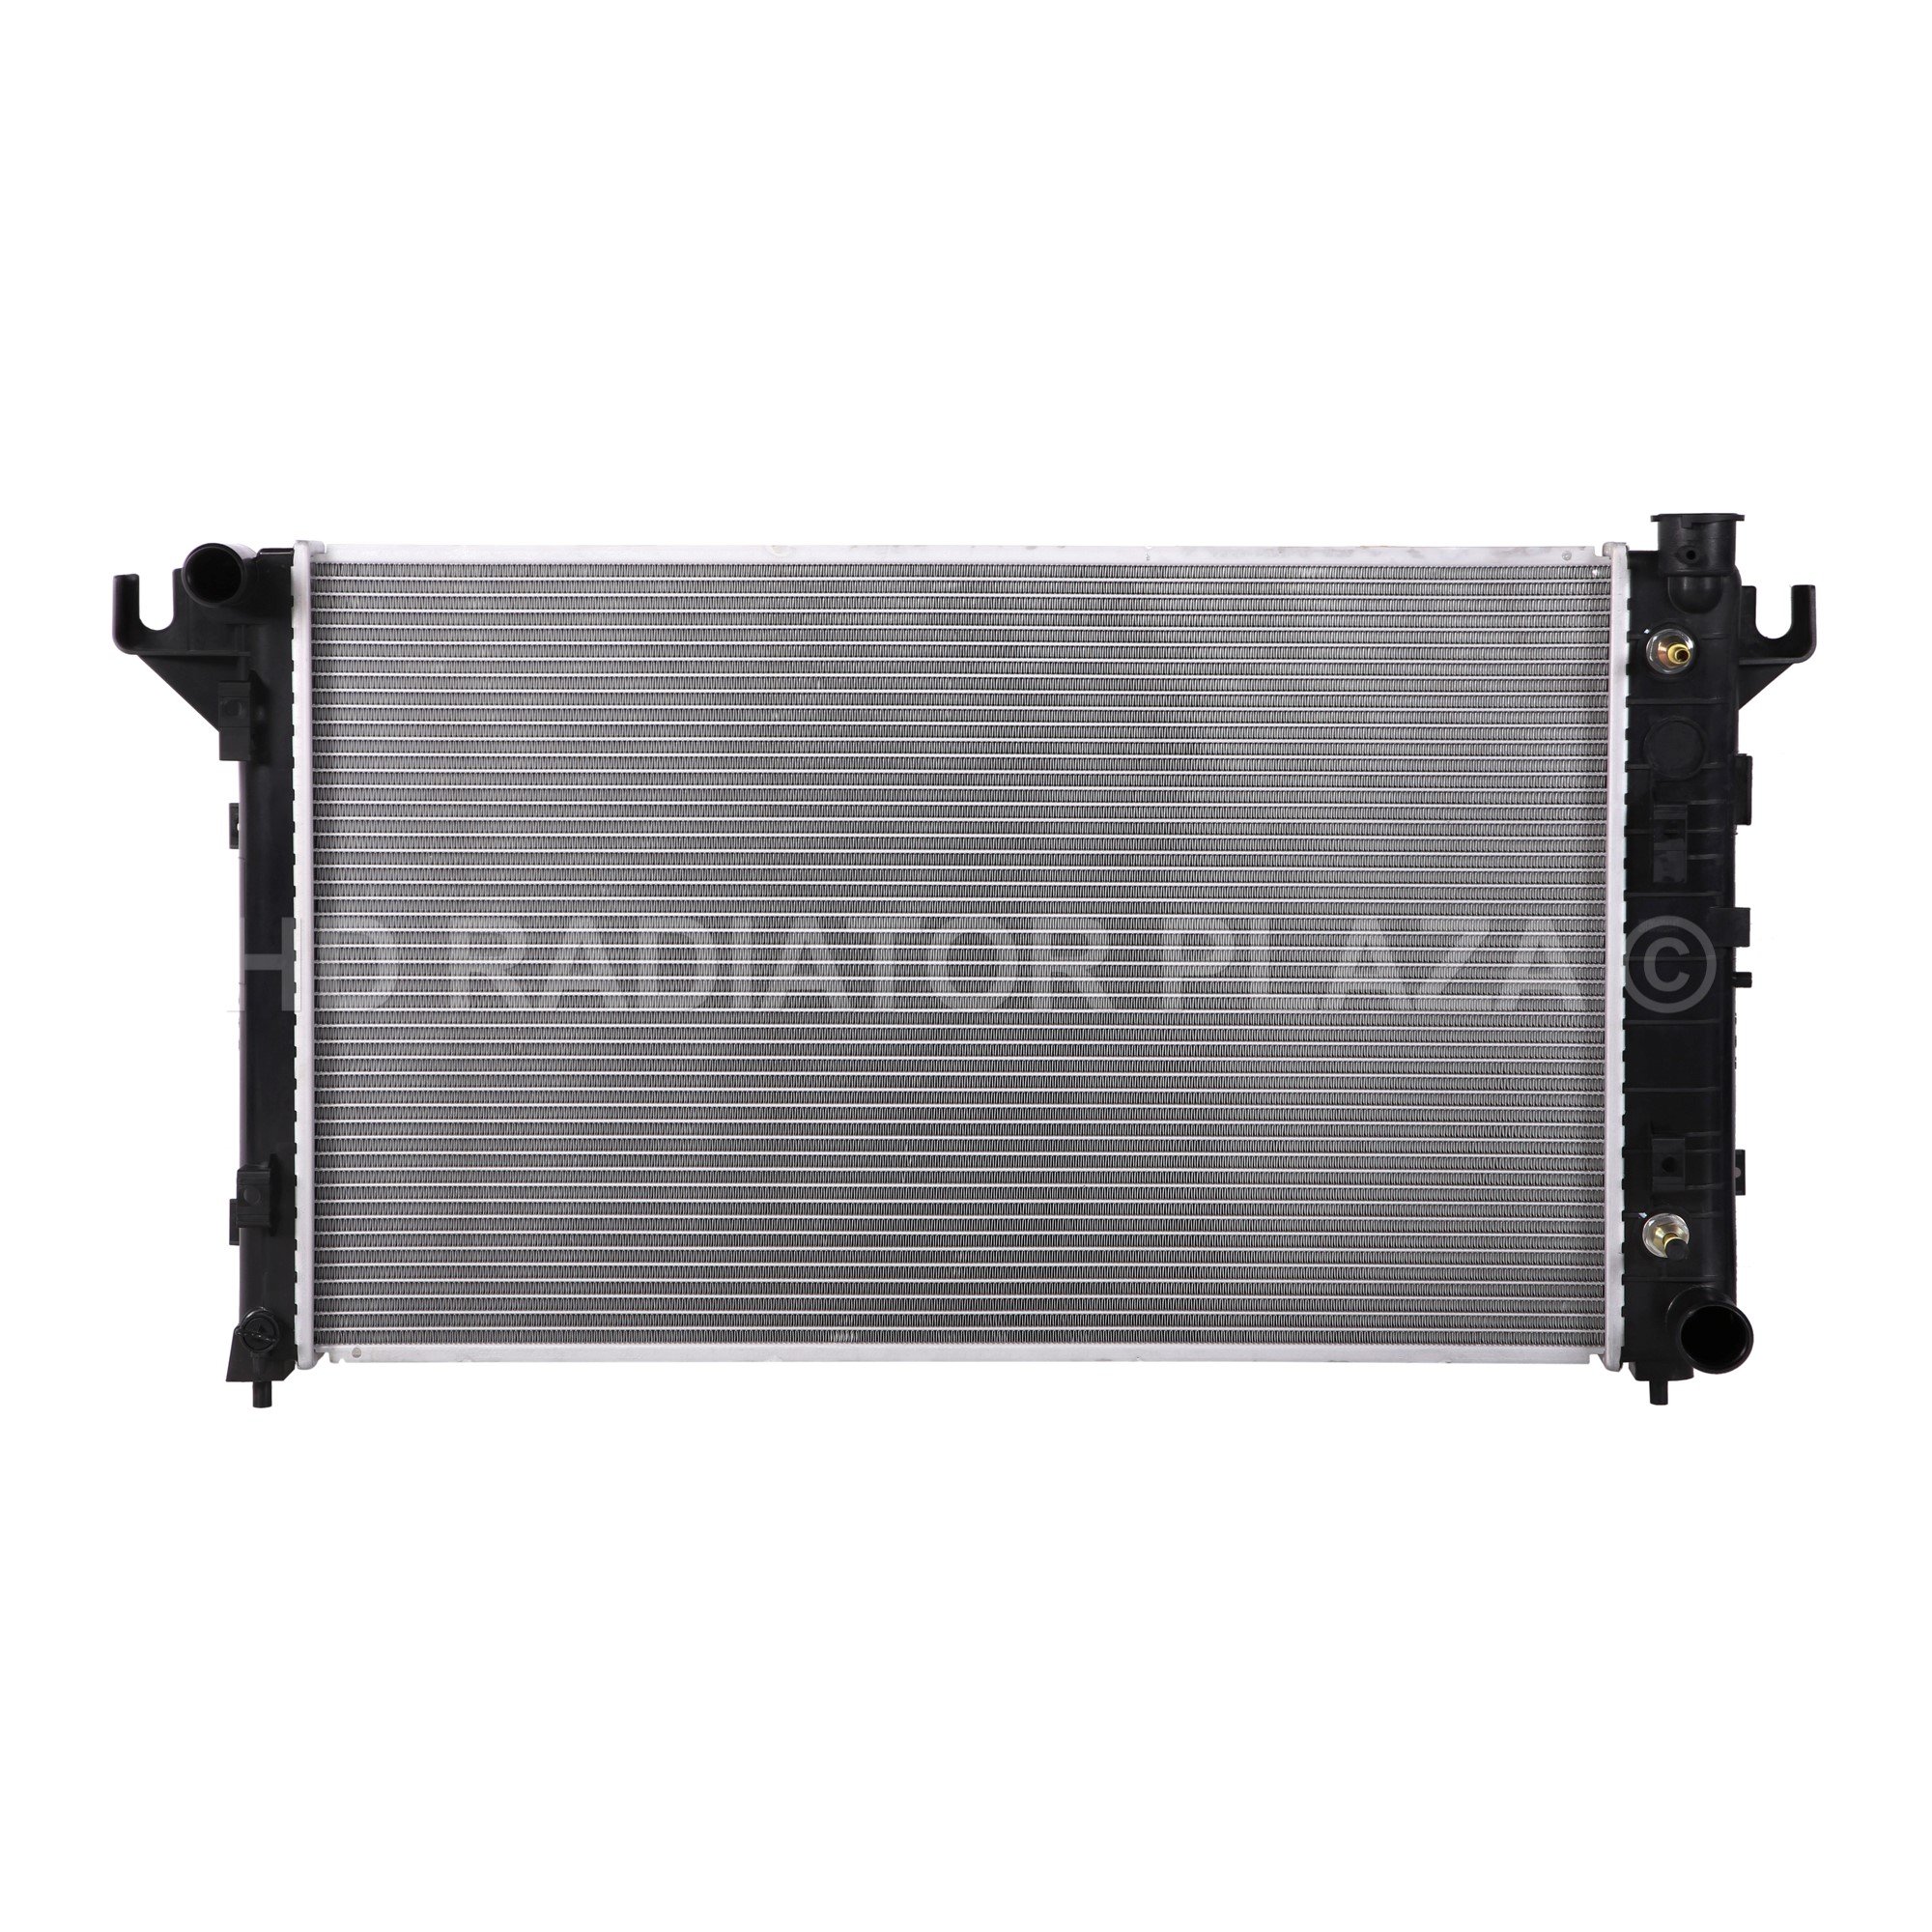 Radiator for 94-02 Ram 1500 2500 3500